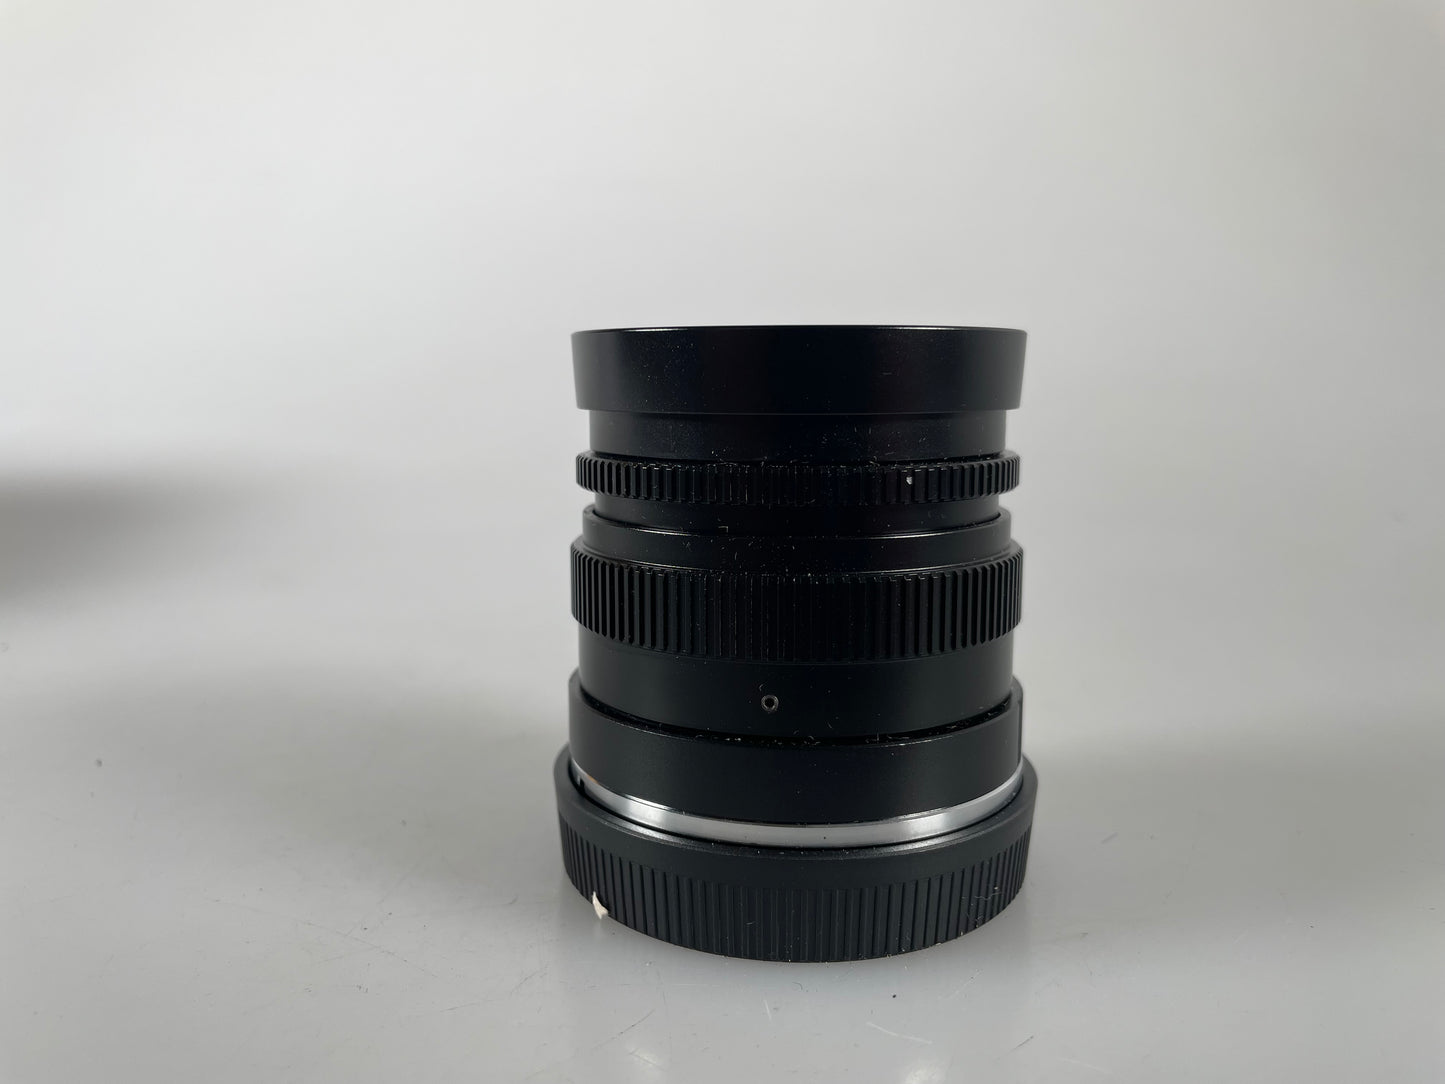 7artisans 35mm F1.4 Full Frame Manual Focus Lens for Sony E Mount Camera